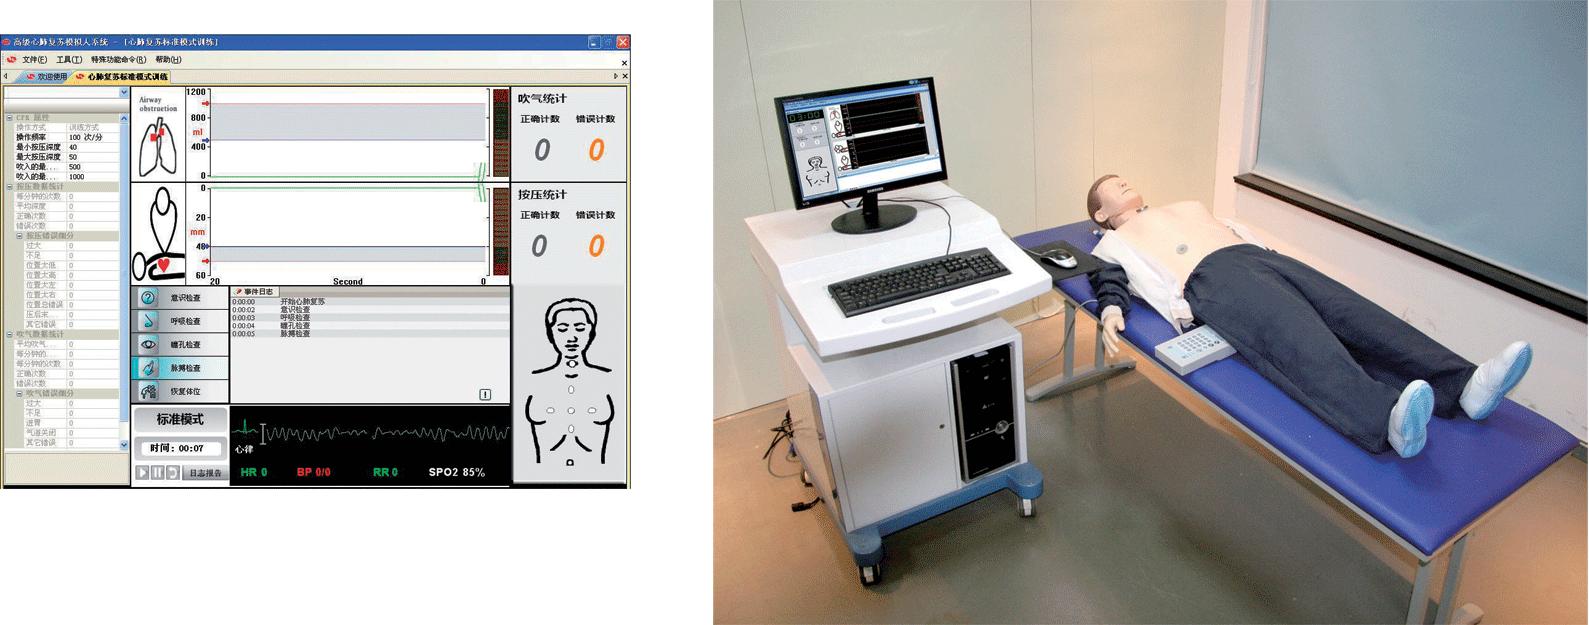 高级心肺复苏、AED除颤模拟人（计算机控制、三合一组合）GD/BLS10700